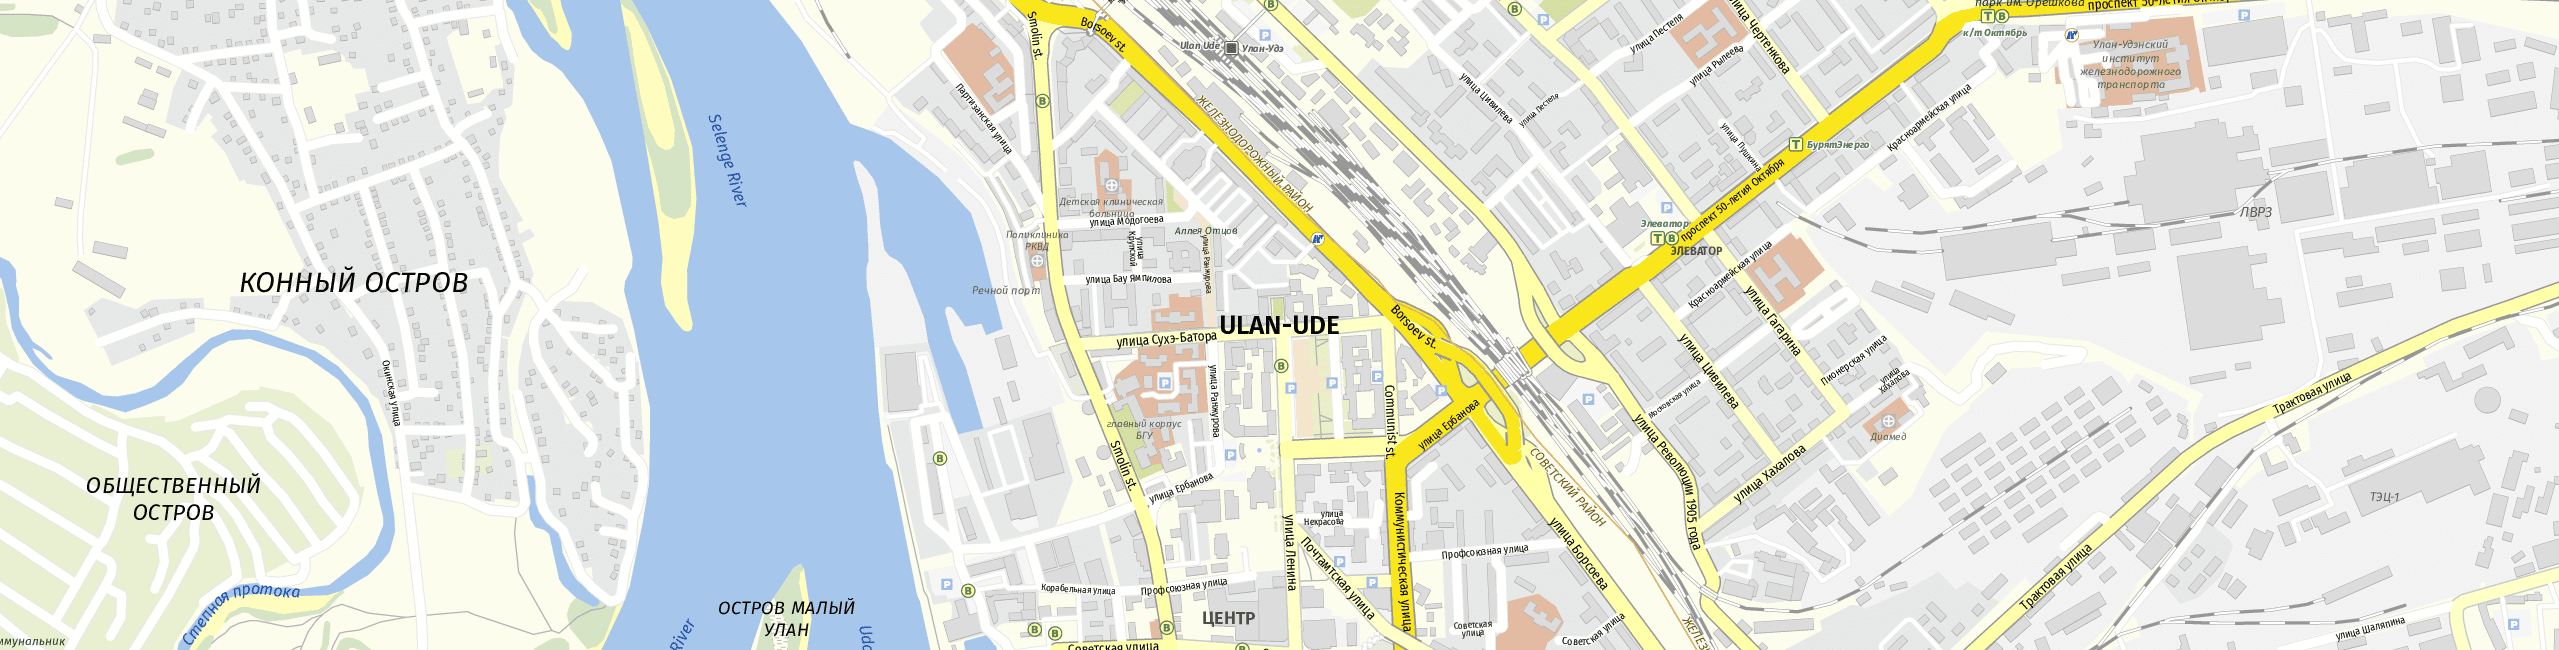 Stadtplan Ulan-Ude zum Downloaden.